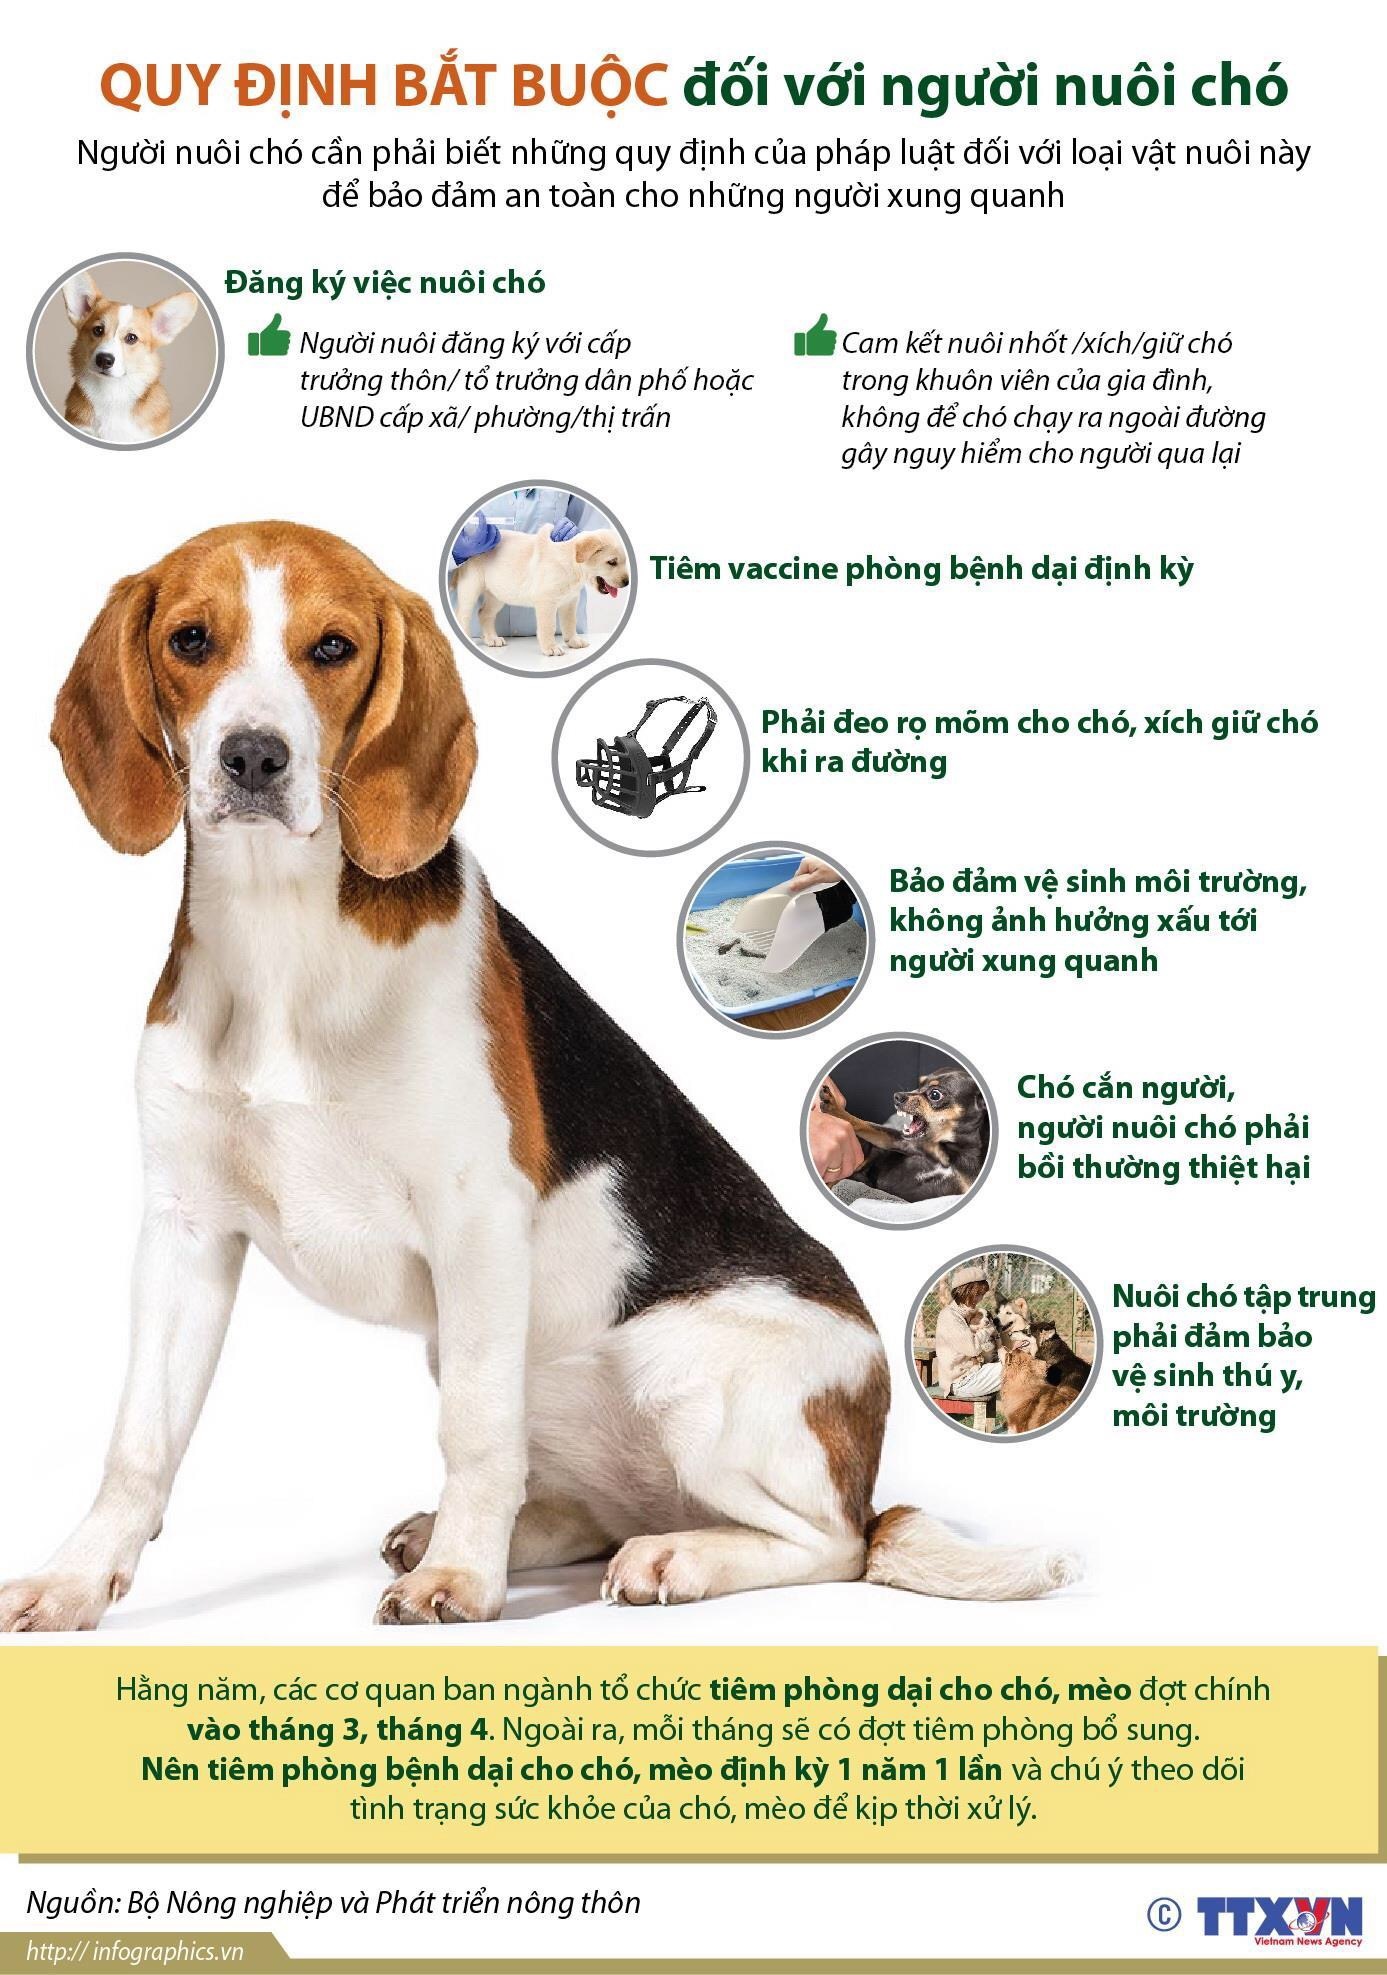 Những quy định bắt buộc mà chủ nuôi chó cần phải nắm rõ.